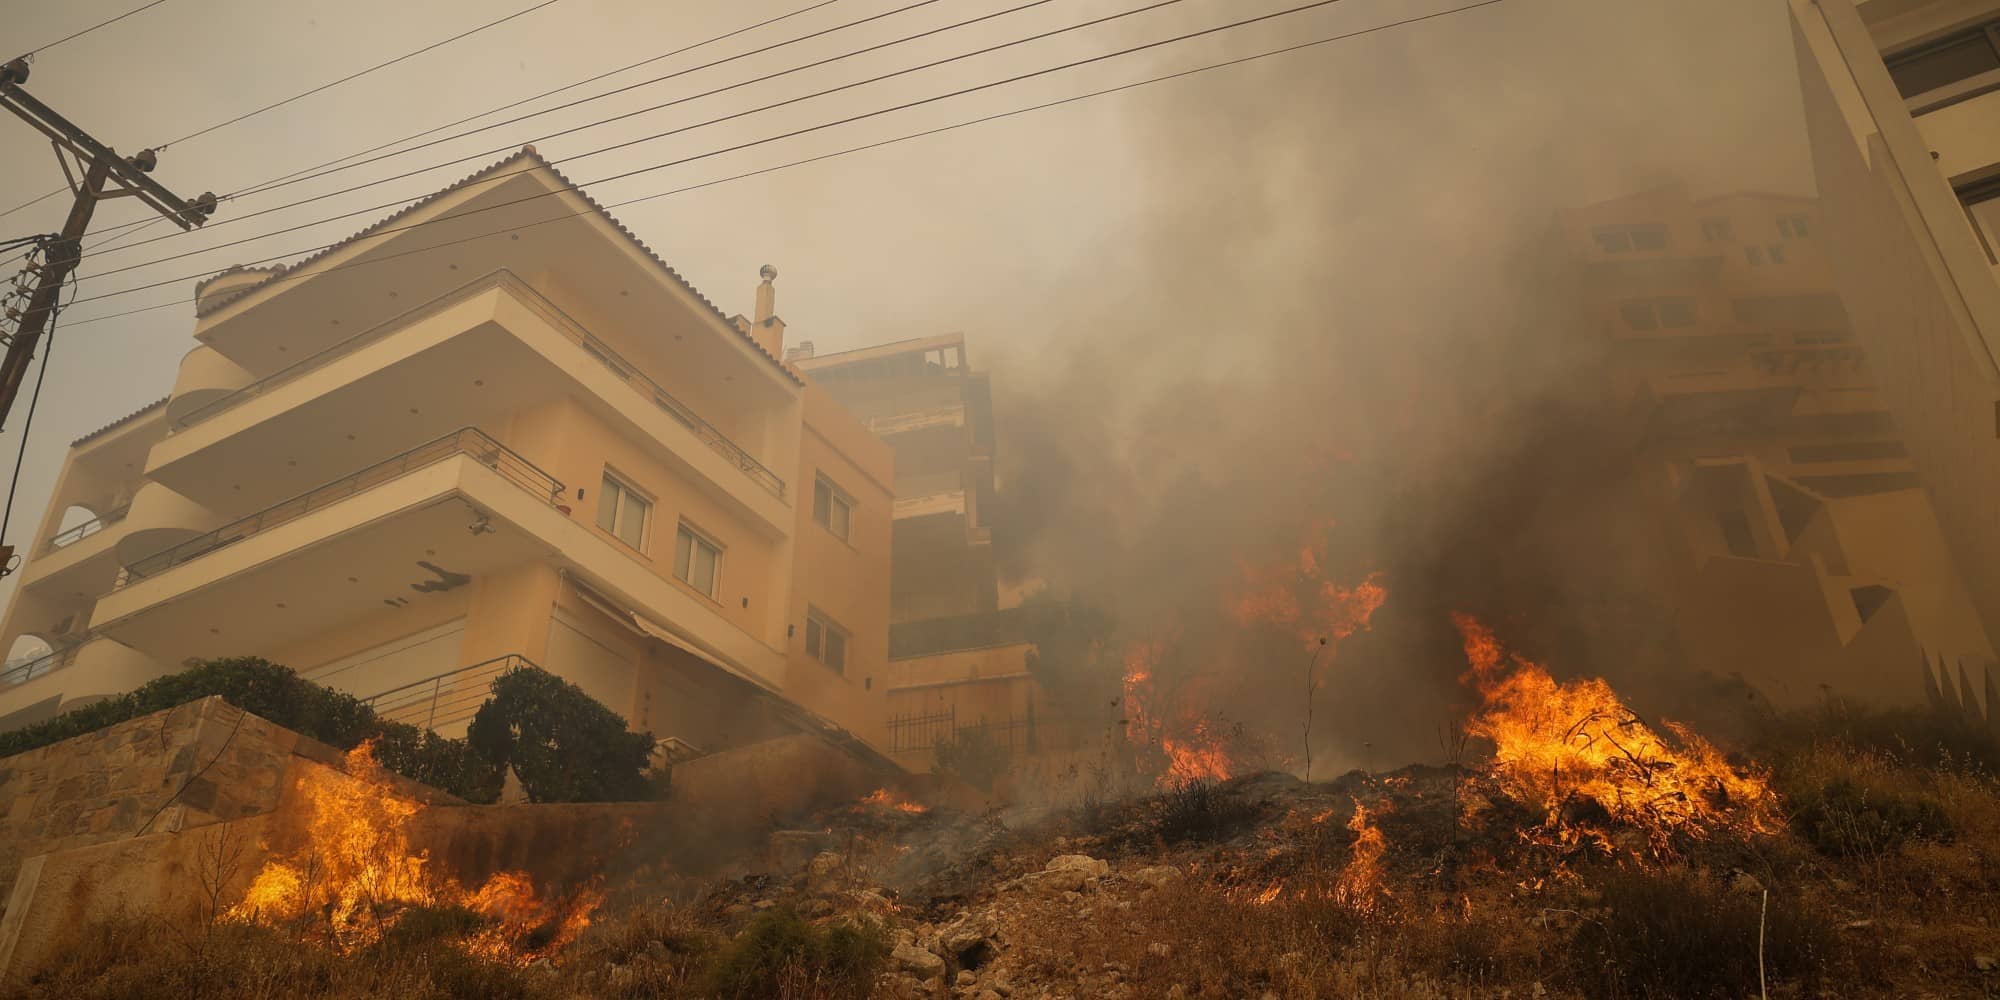 fotia voula 5 6 2022 1 - Σε ύφεση η πυρκαγιά στη Βούλα: Ολονύχτια μάχη με τις φλόγες - Ενισχύονται οι Πυροσβεστικές δυνάμεις (εικόνες)